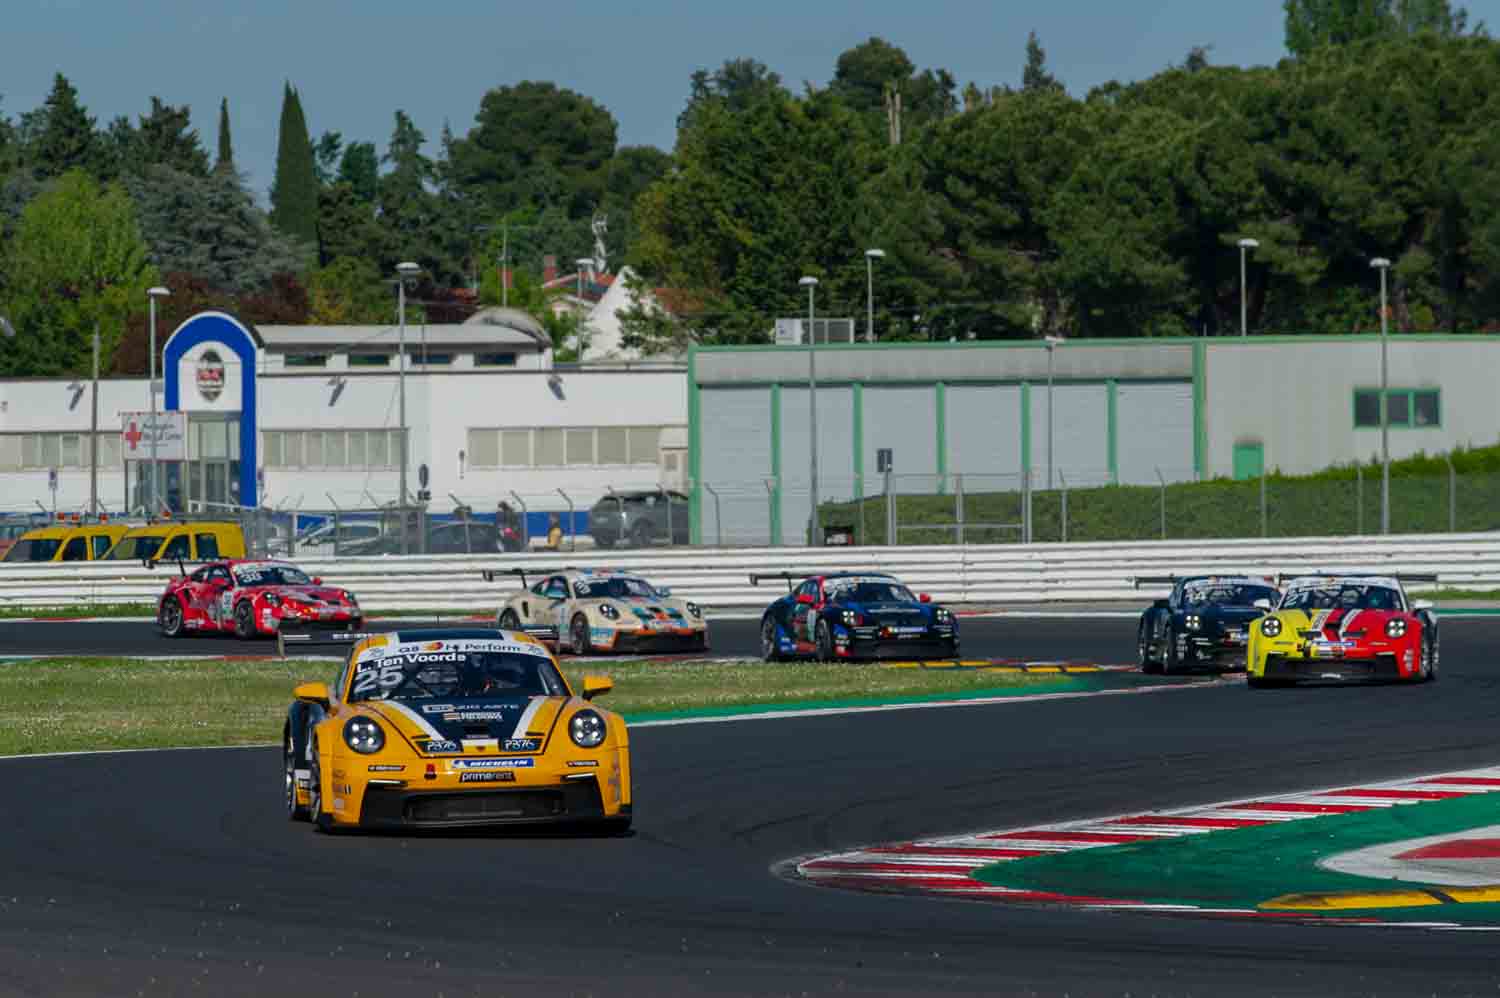 Porsche Carrera Cup Italia, prestigioso campionato monomarca, apre la stagione e lo fa sulla pista del Misano World Circuit.